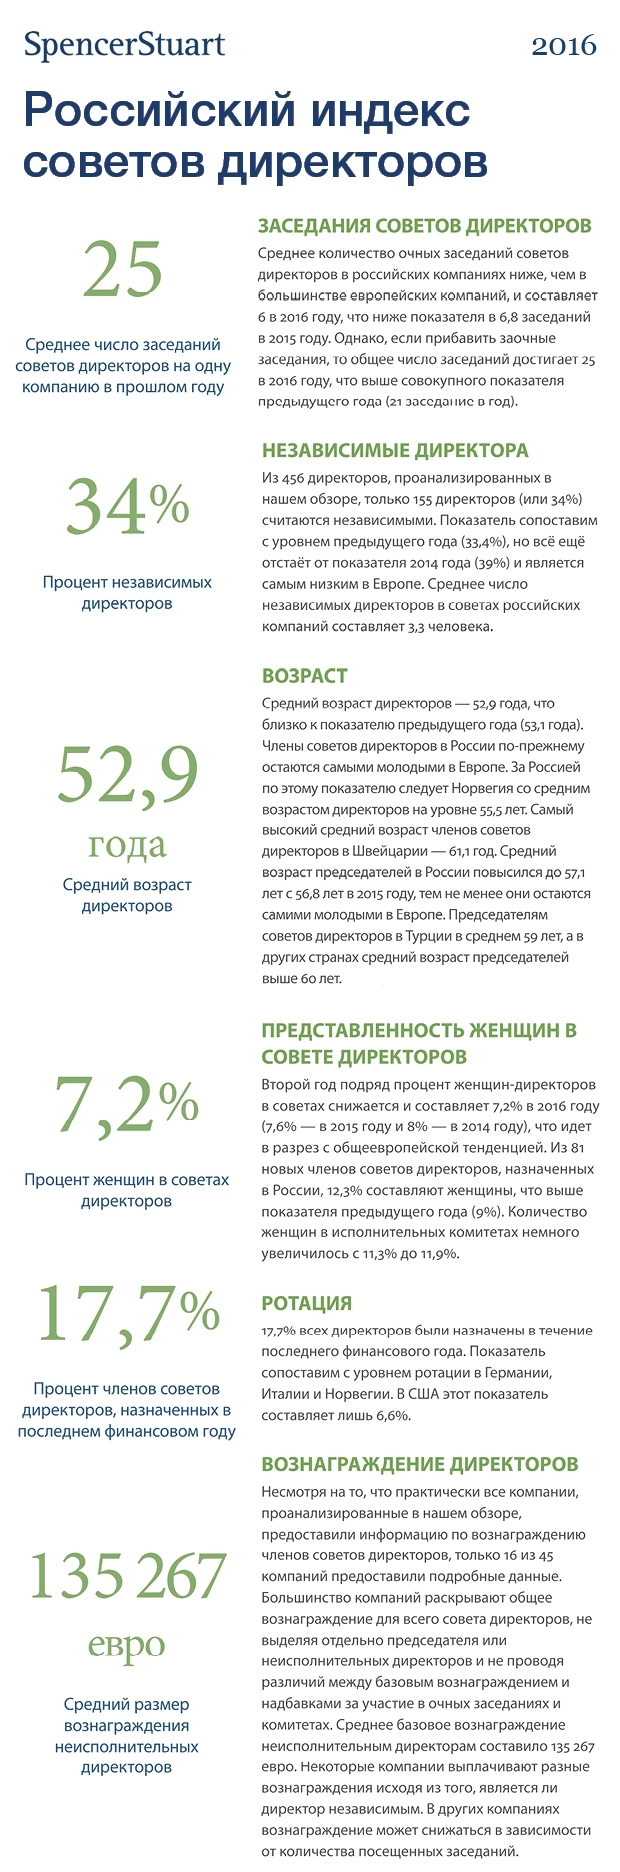 Российский индекс советов директоров